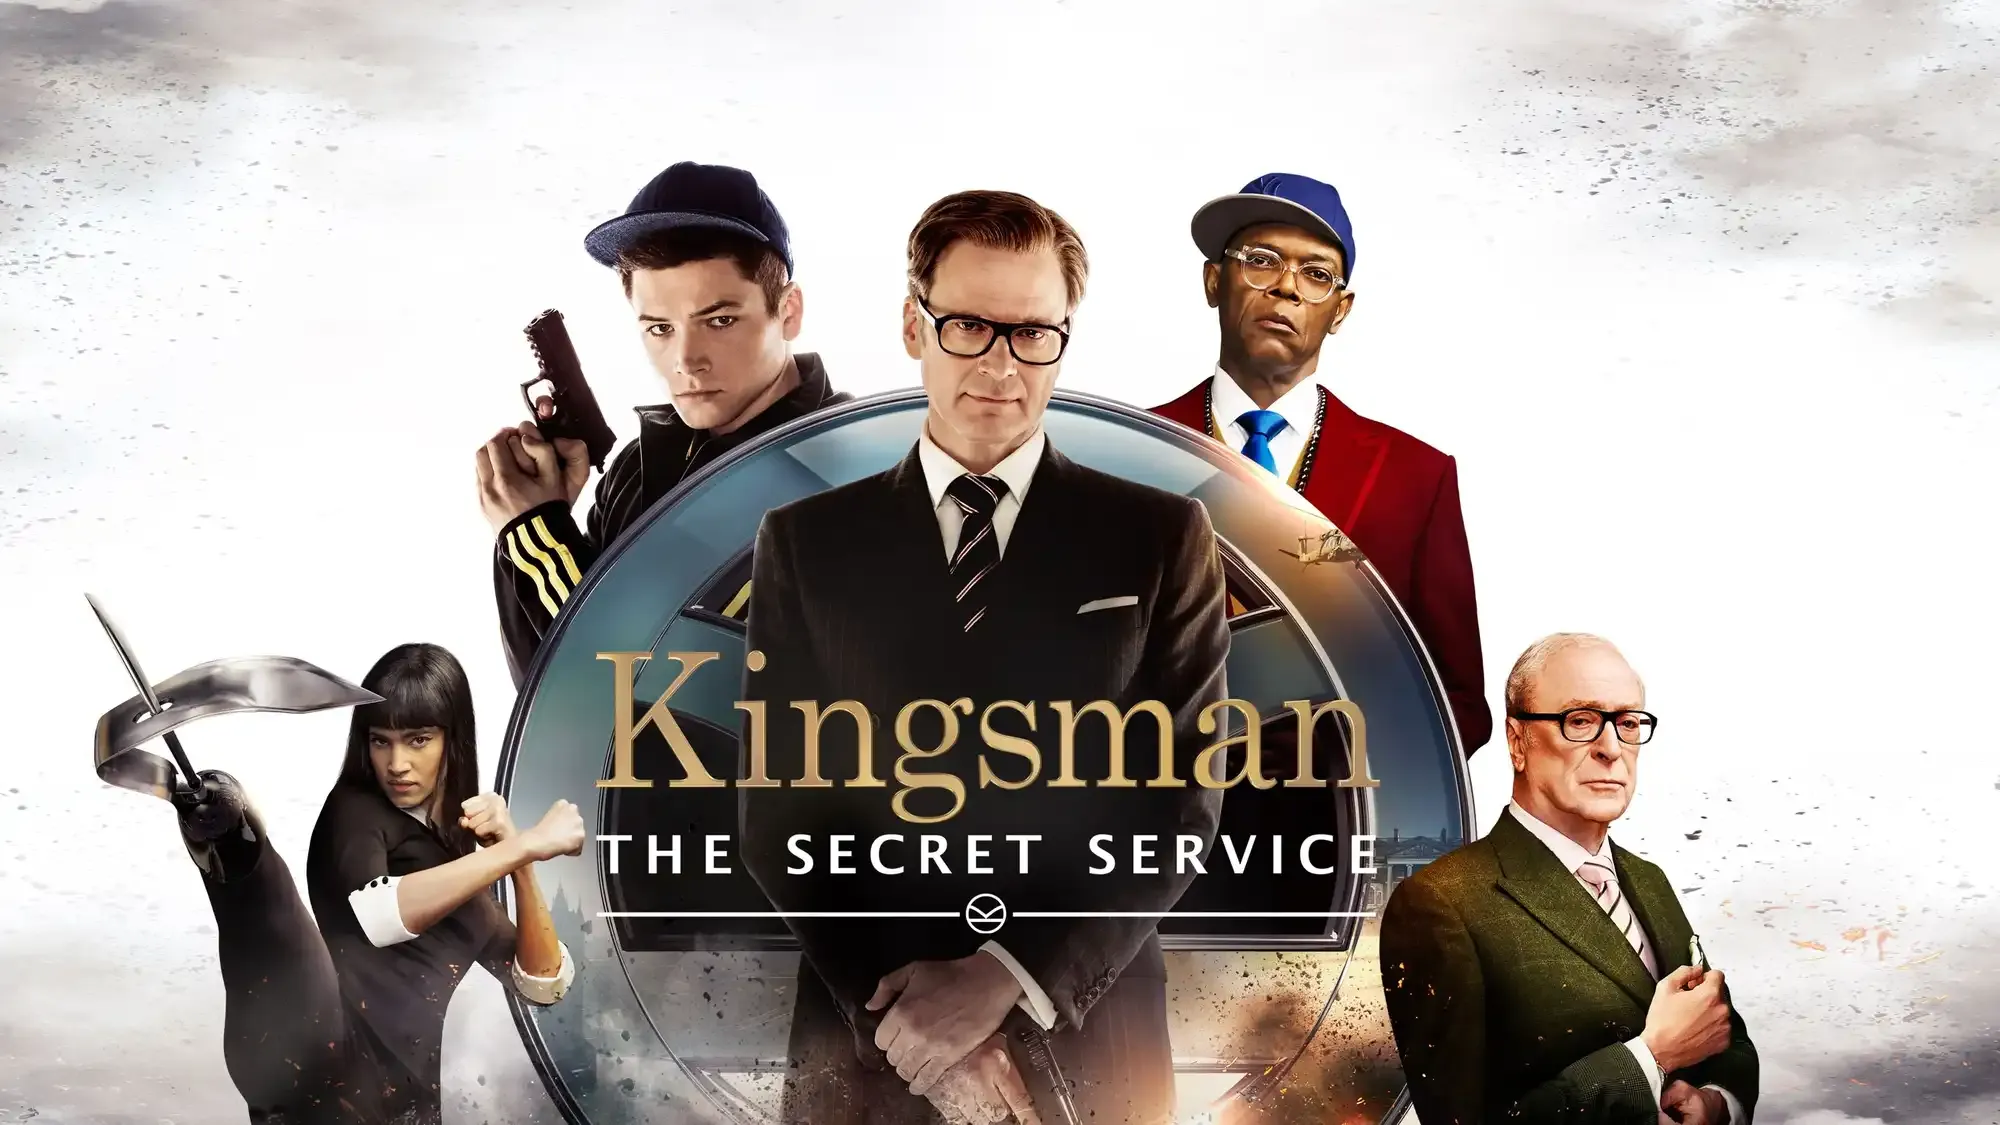 Kingsman: The Secret Service movie review